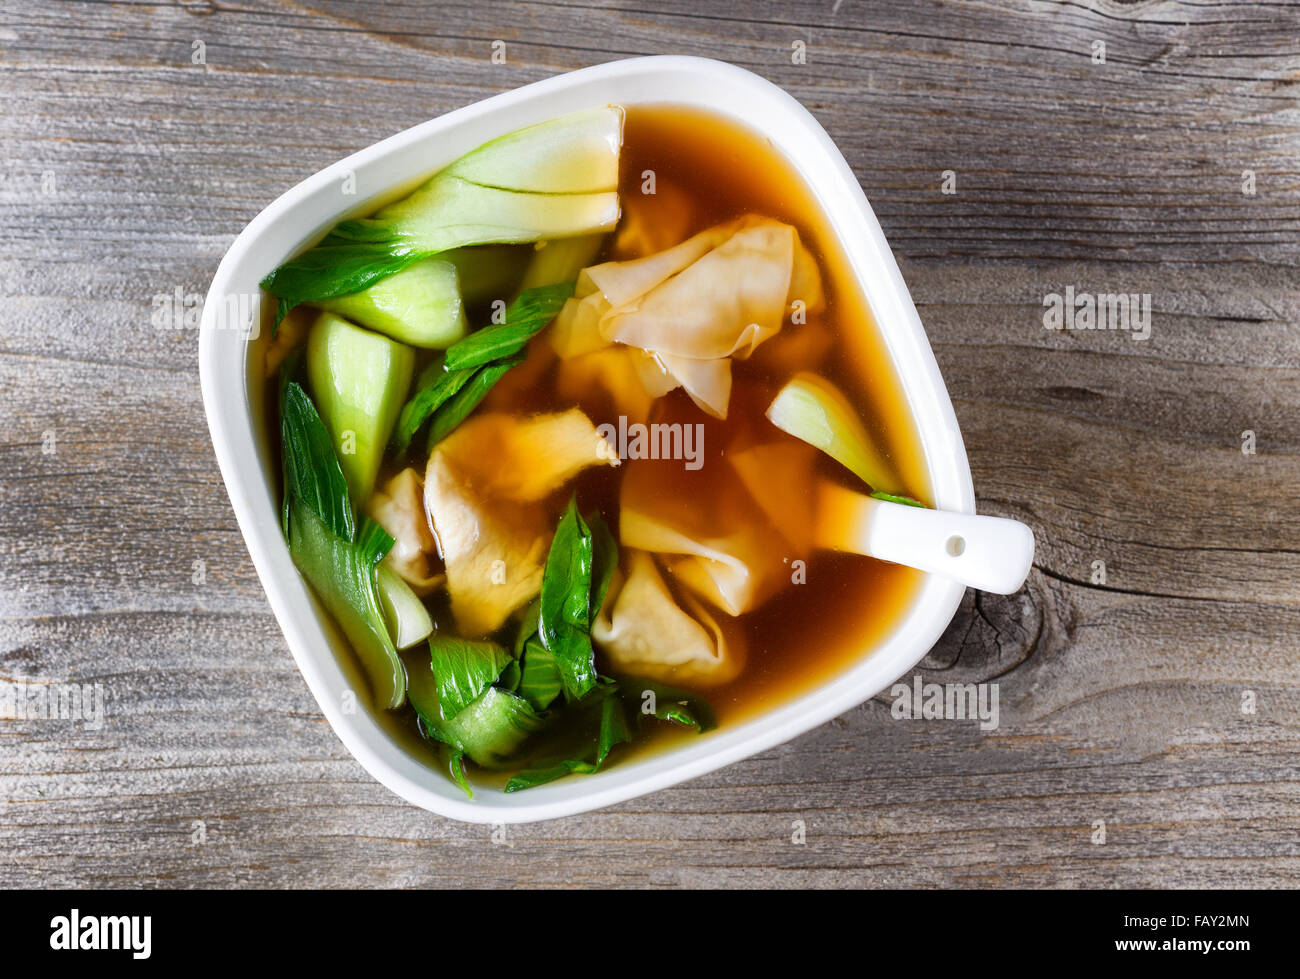 Vue supérieure de la soupe gratuite chinois avec le bok choy sur bois rustique. Banque D'Images